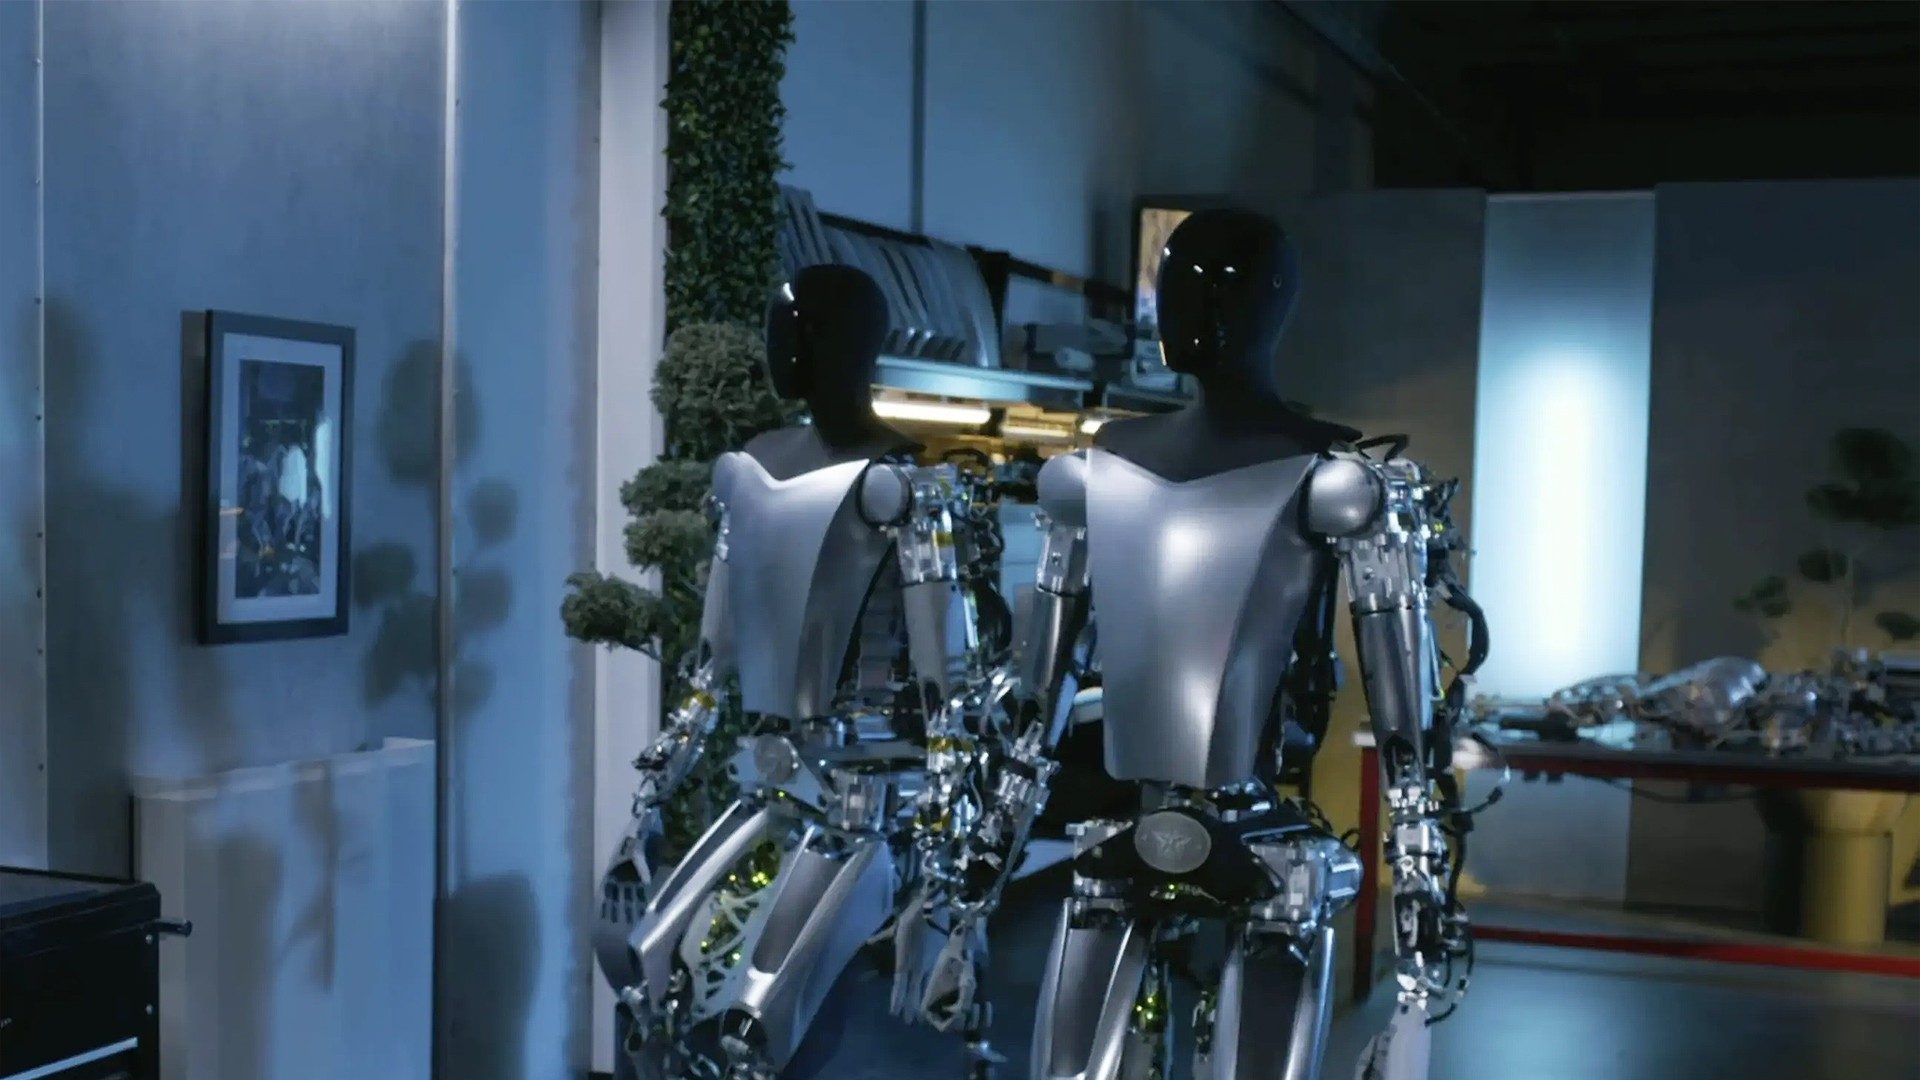 Tesla Optimus: Elon Musk posta novo vídeo do robô humanoide de sua empresa  